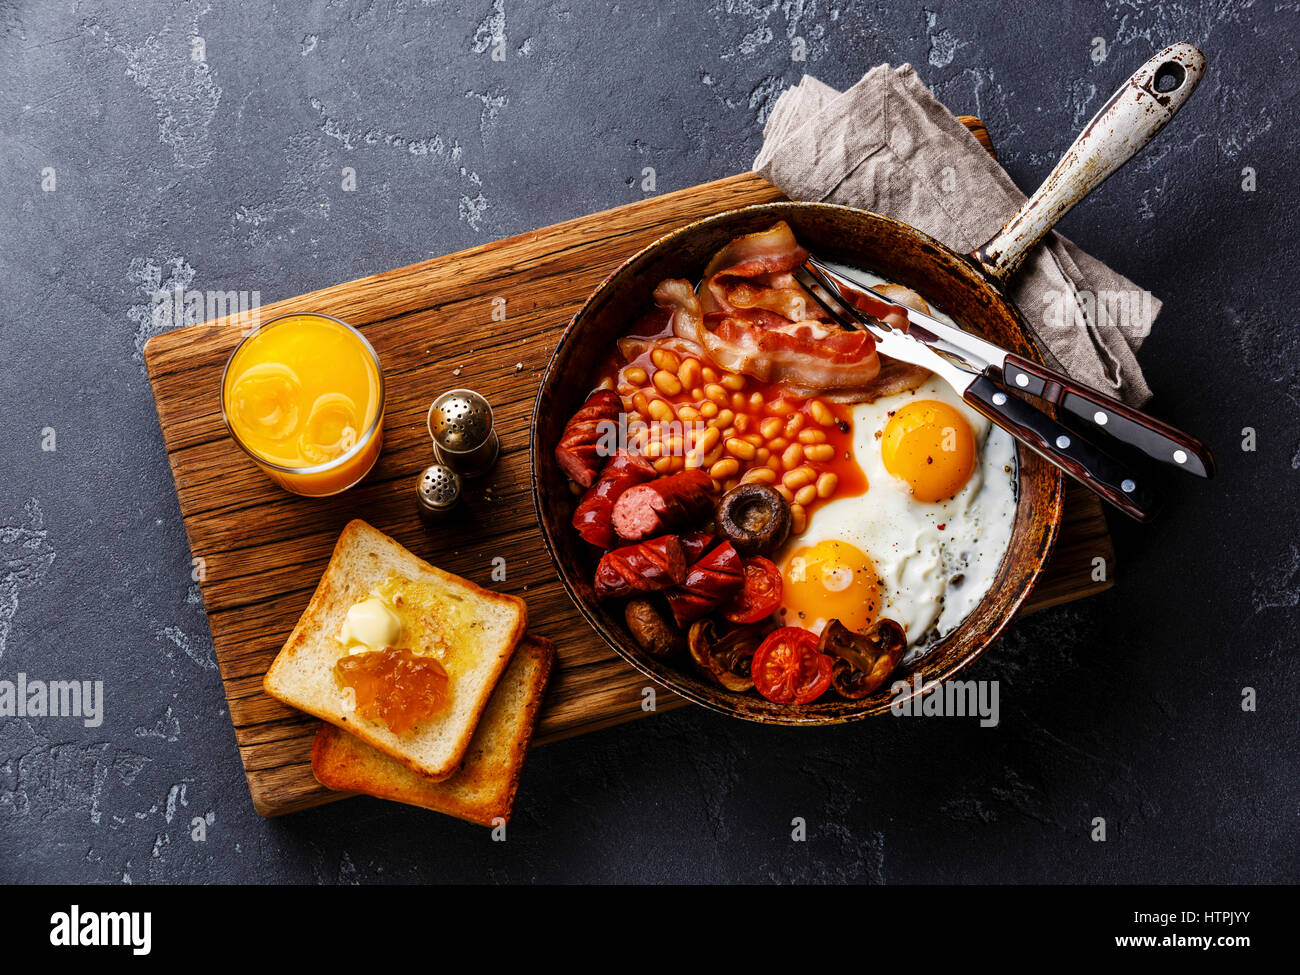 Prima colazione inglese nel recipiente di cottura con uova fritte, salsicce, pancetta, fagioli, pane tostato e succo di arancio scuro su sfondo di pietra Foto Stock